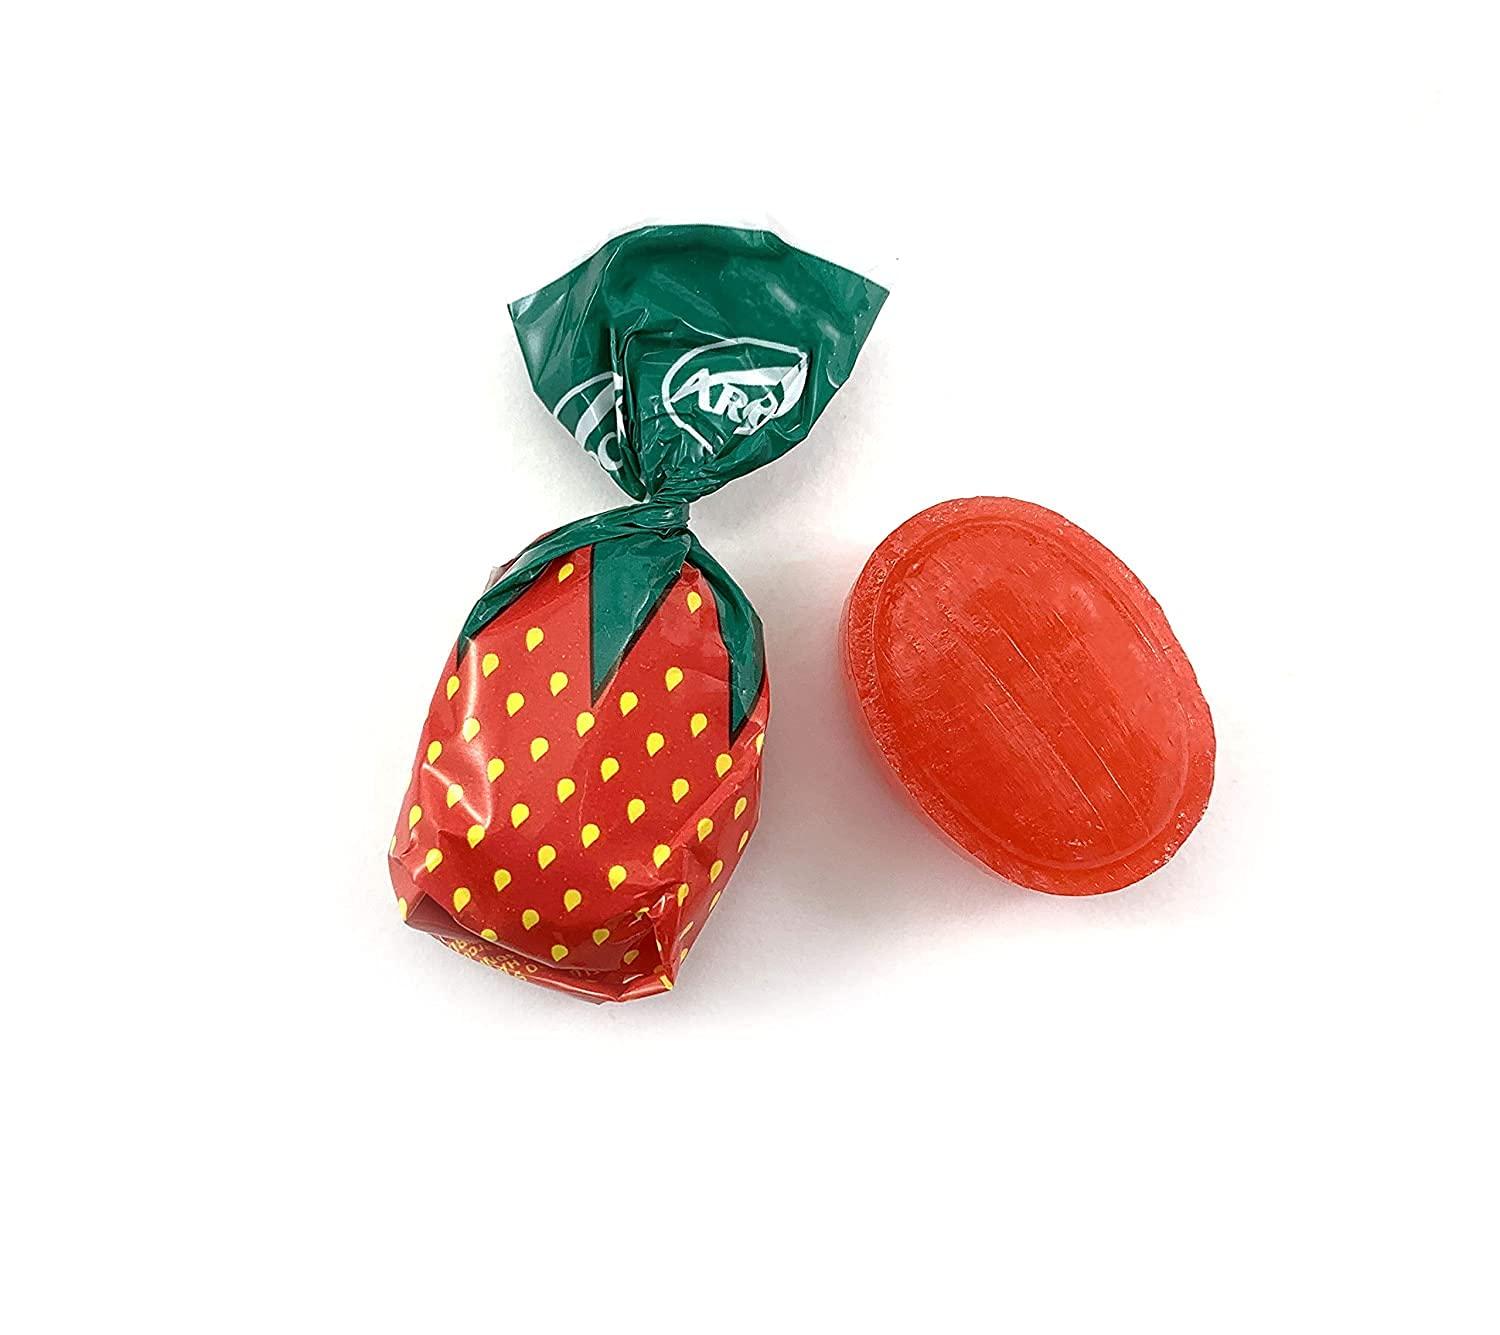 Arcor Strawberry Bon Bons Filled Hard Candy Bulk, 2 Pound Bag